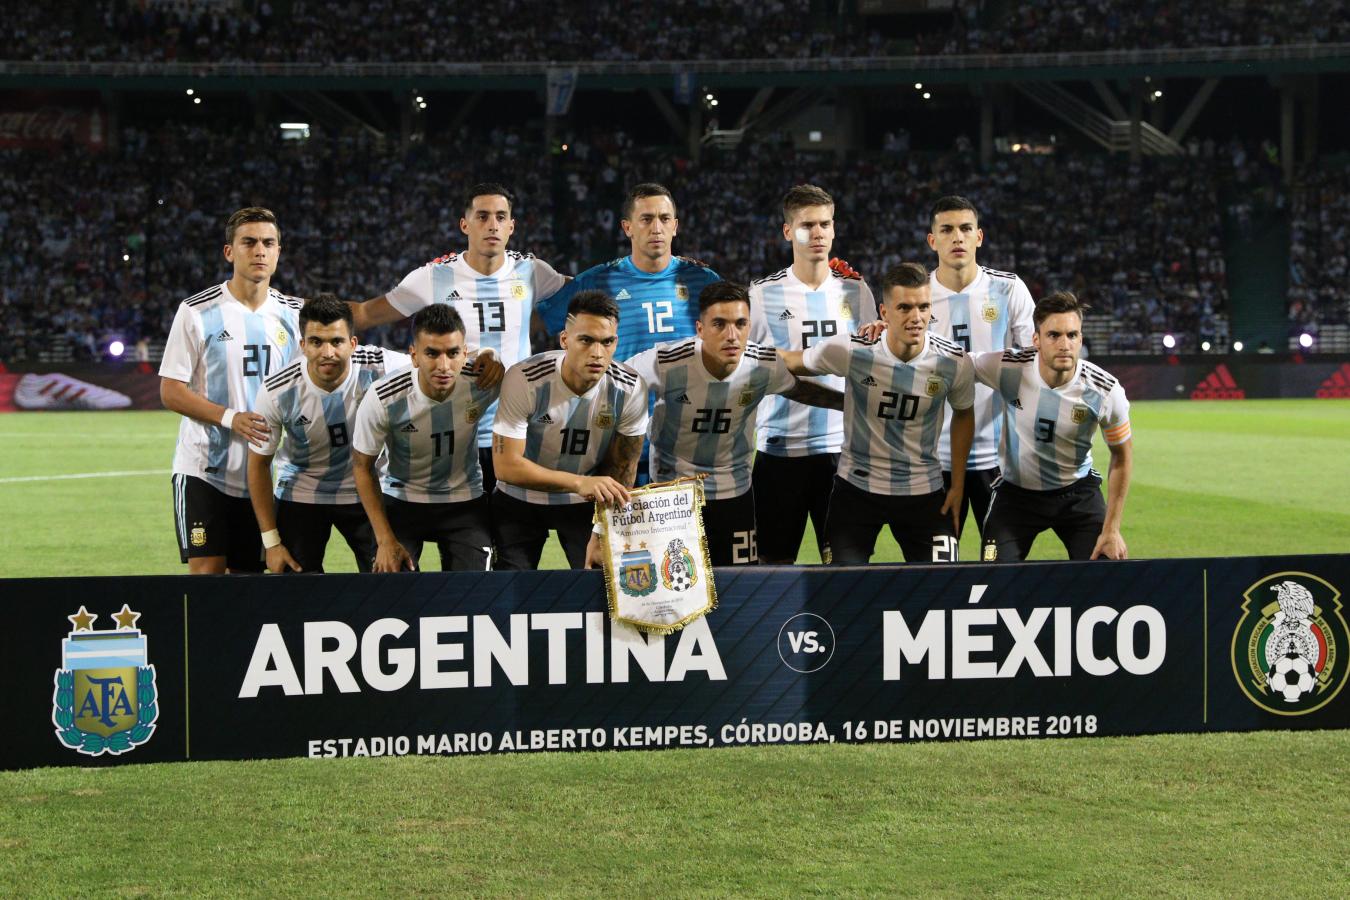 Imagen La última vez de Argentina en Córdoba fue triunfo 2-0 vs México en un amistoso en 2018 (FOTOBAIRES)